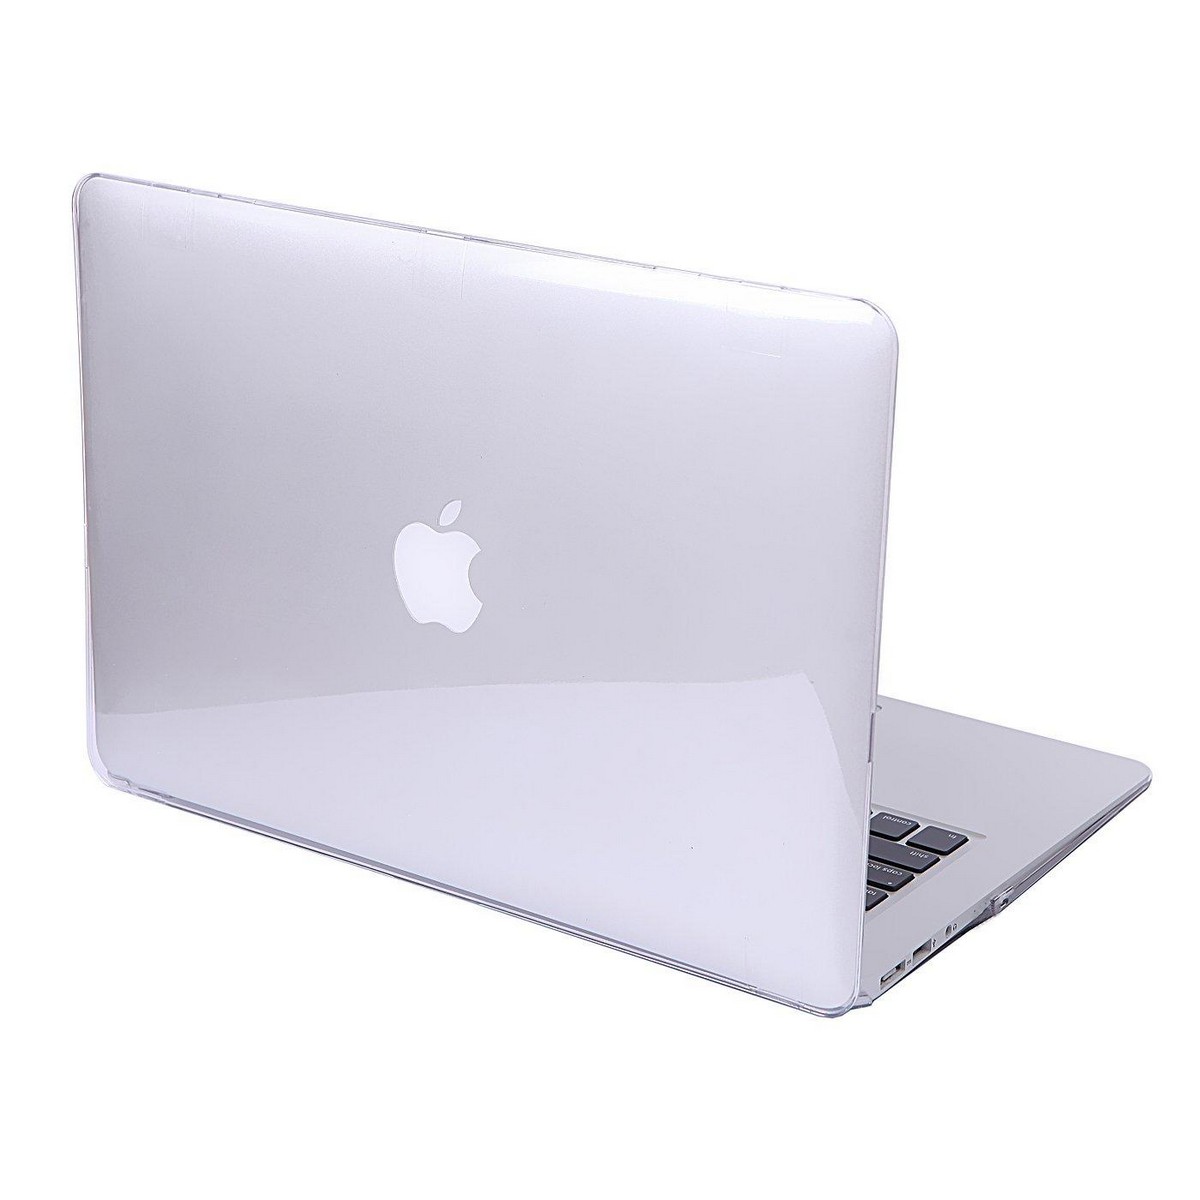 2015 macbook pro for sale best buy